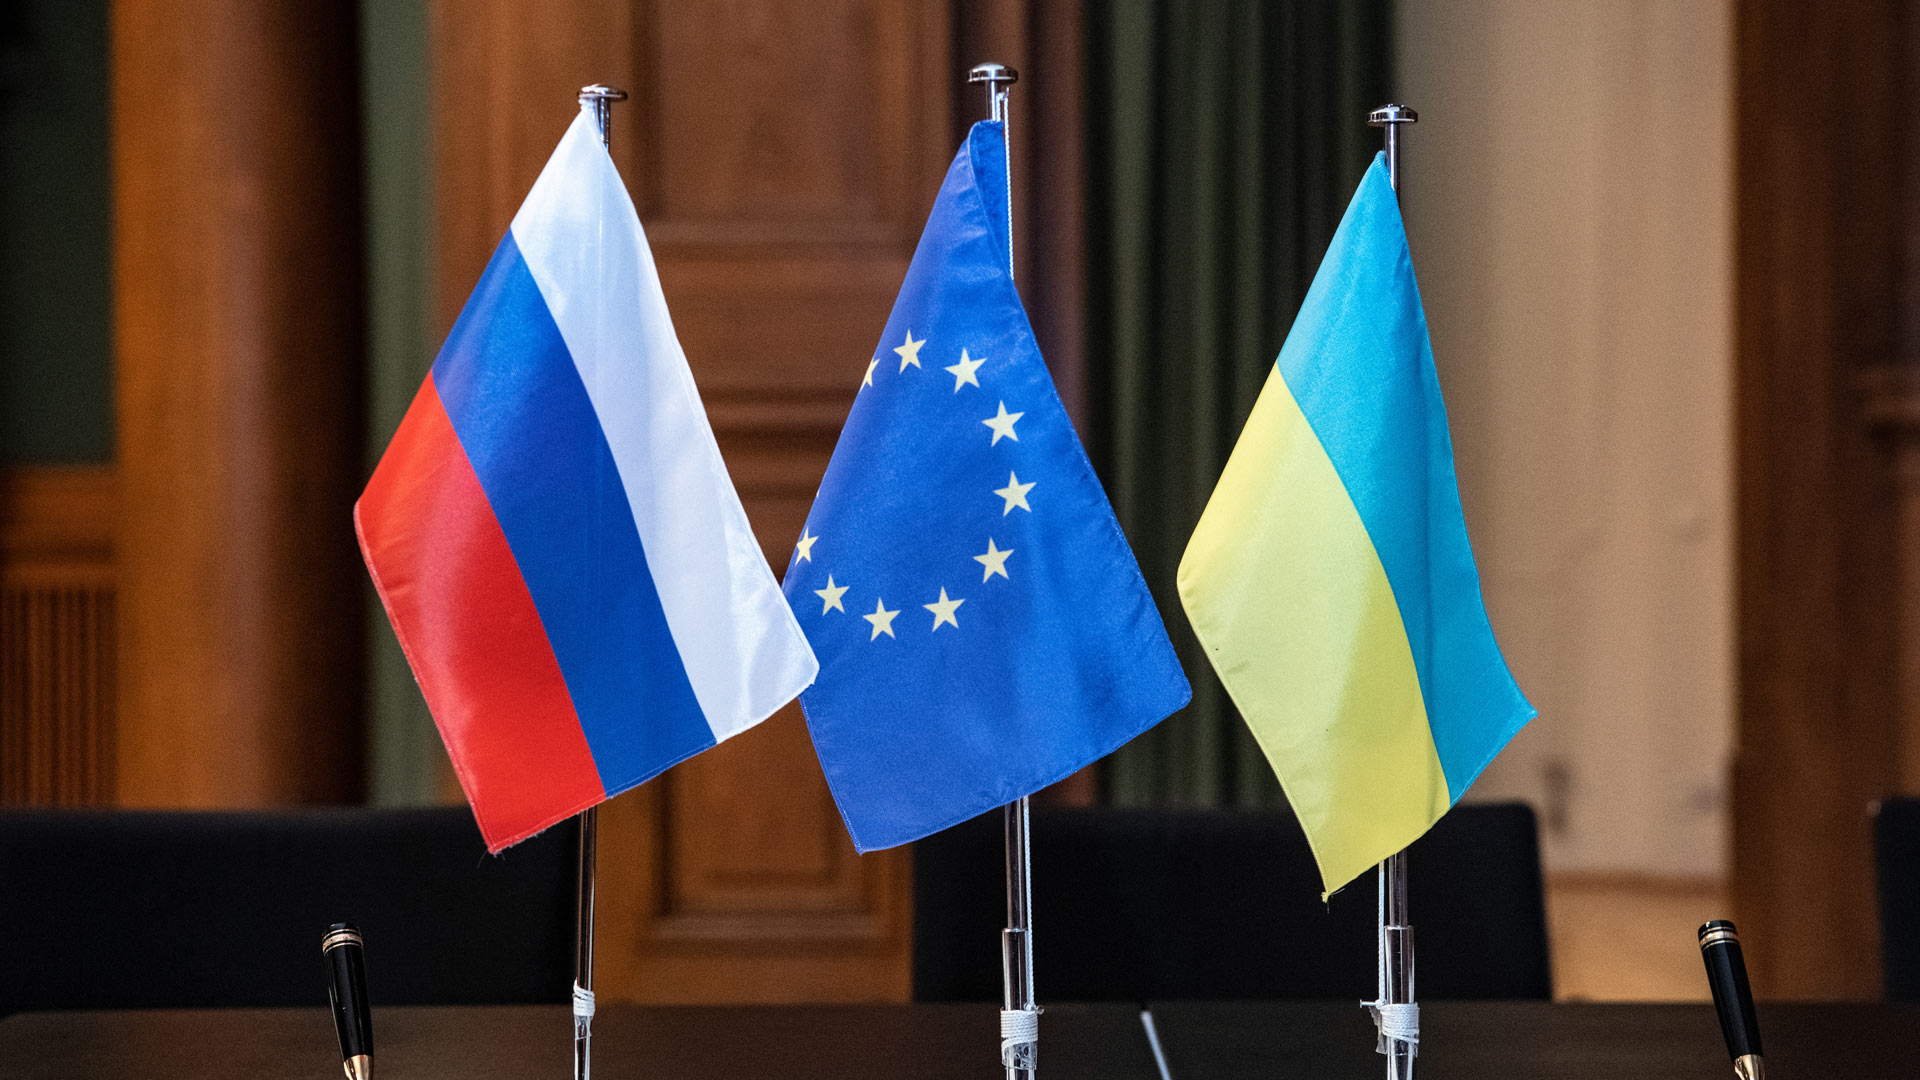 Flaggen von Russland, der EU und der Ukraine | picture alliance/dpa